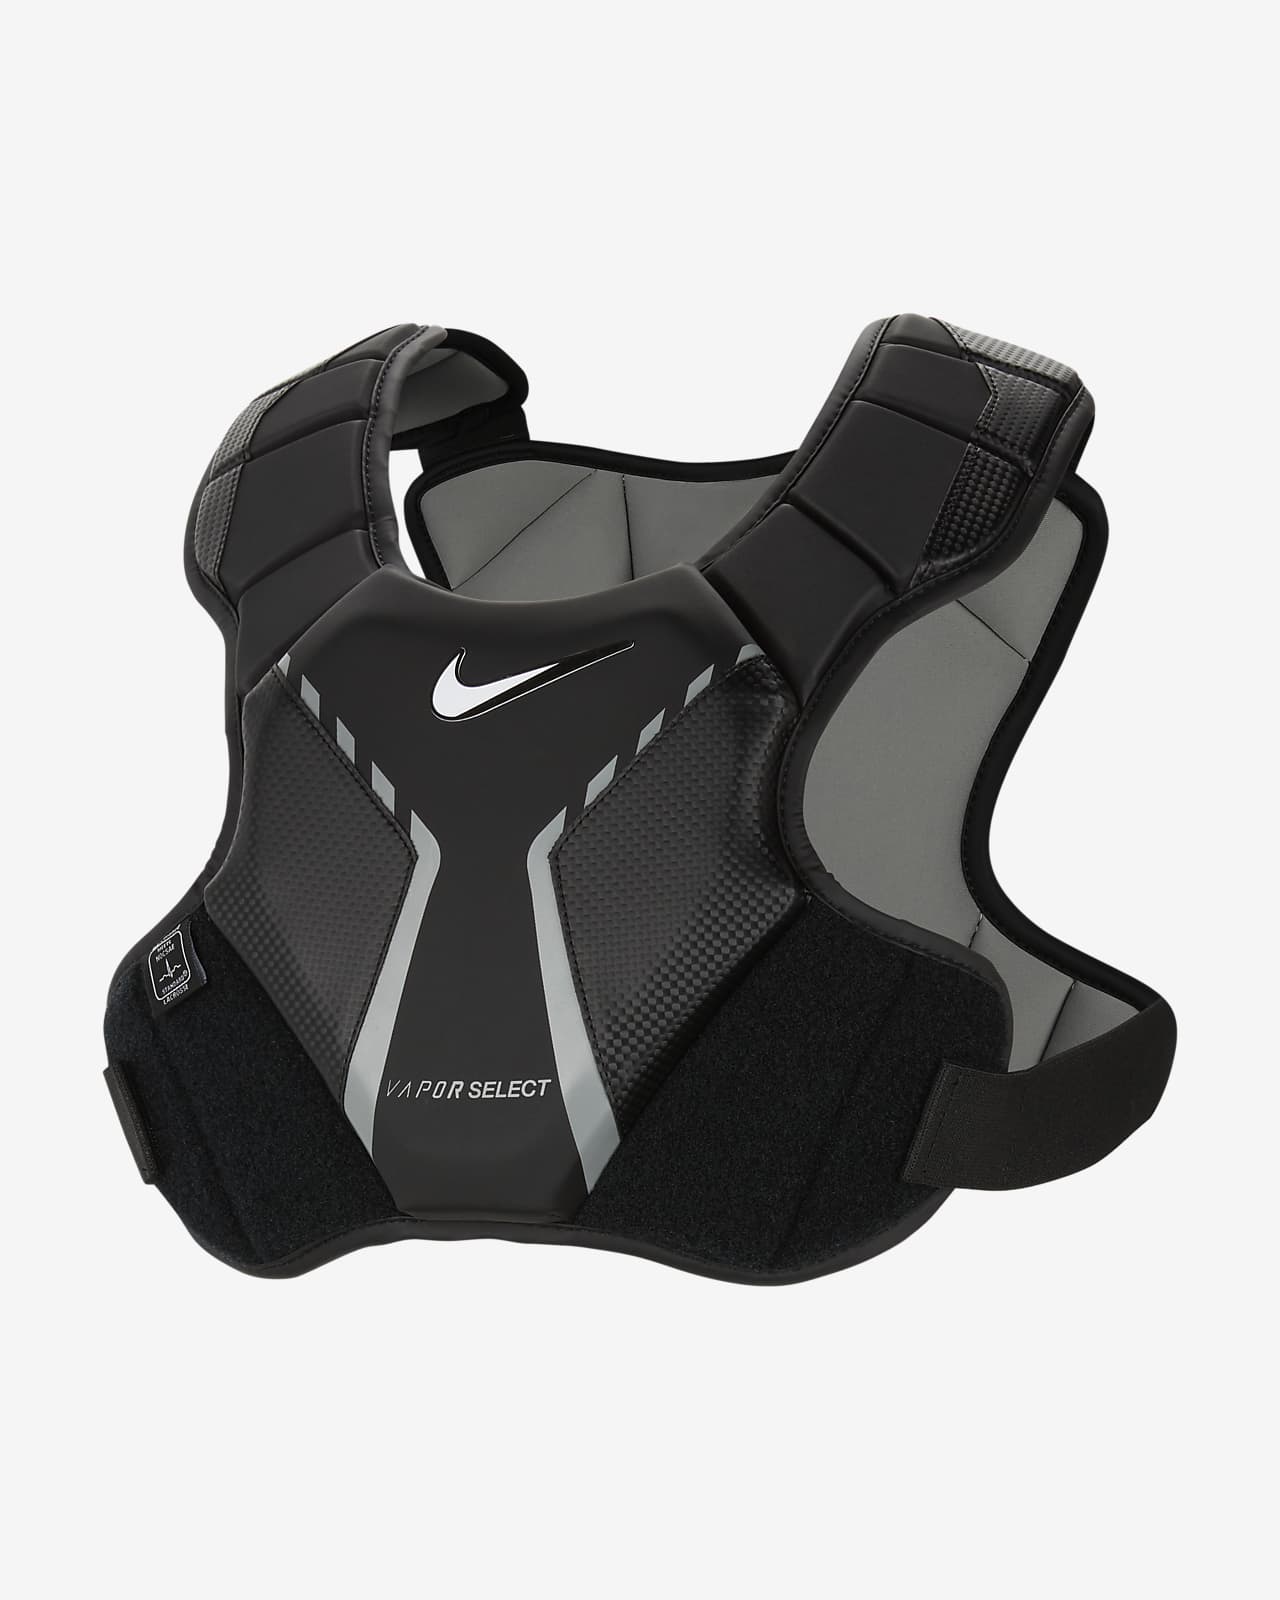 Nike Vapor Men's Lacrosse Shoulder Pad Liner. Nike.com